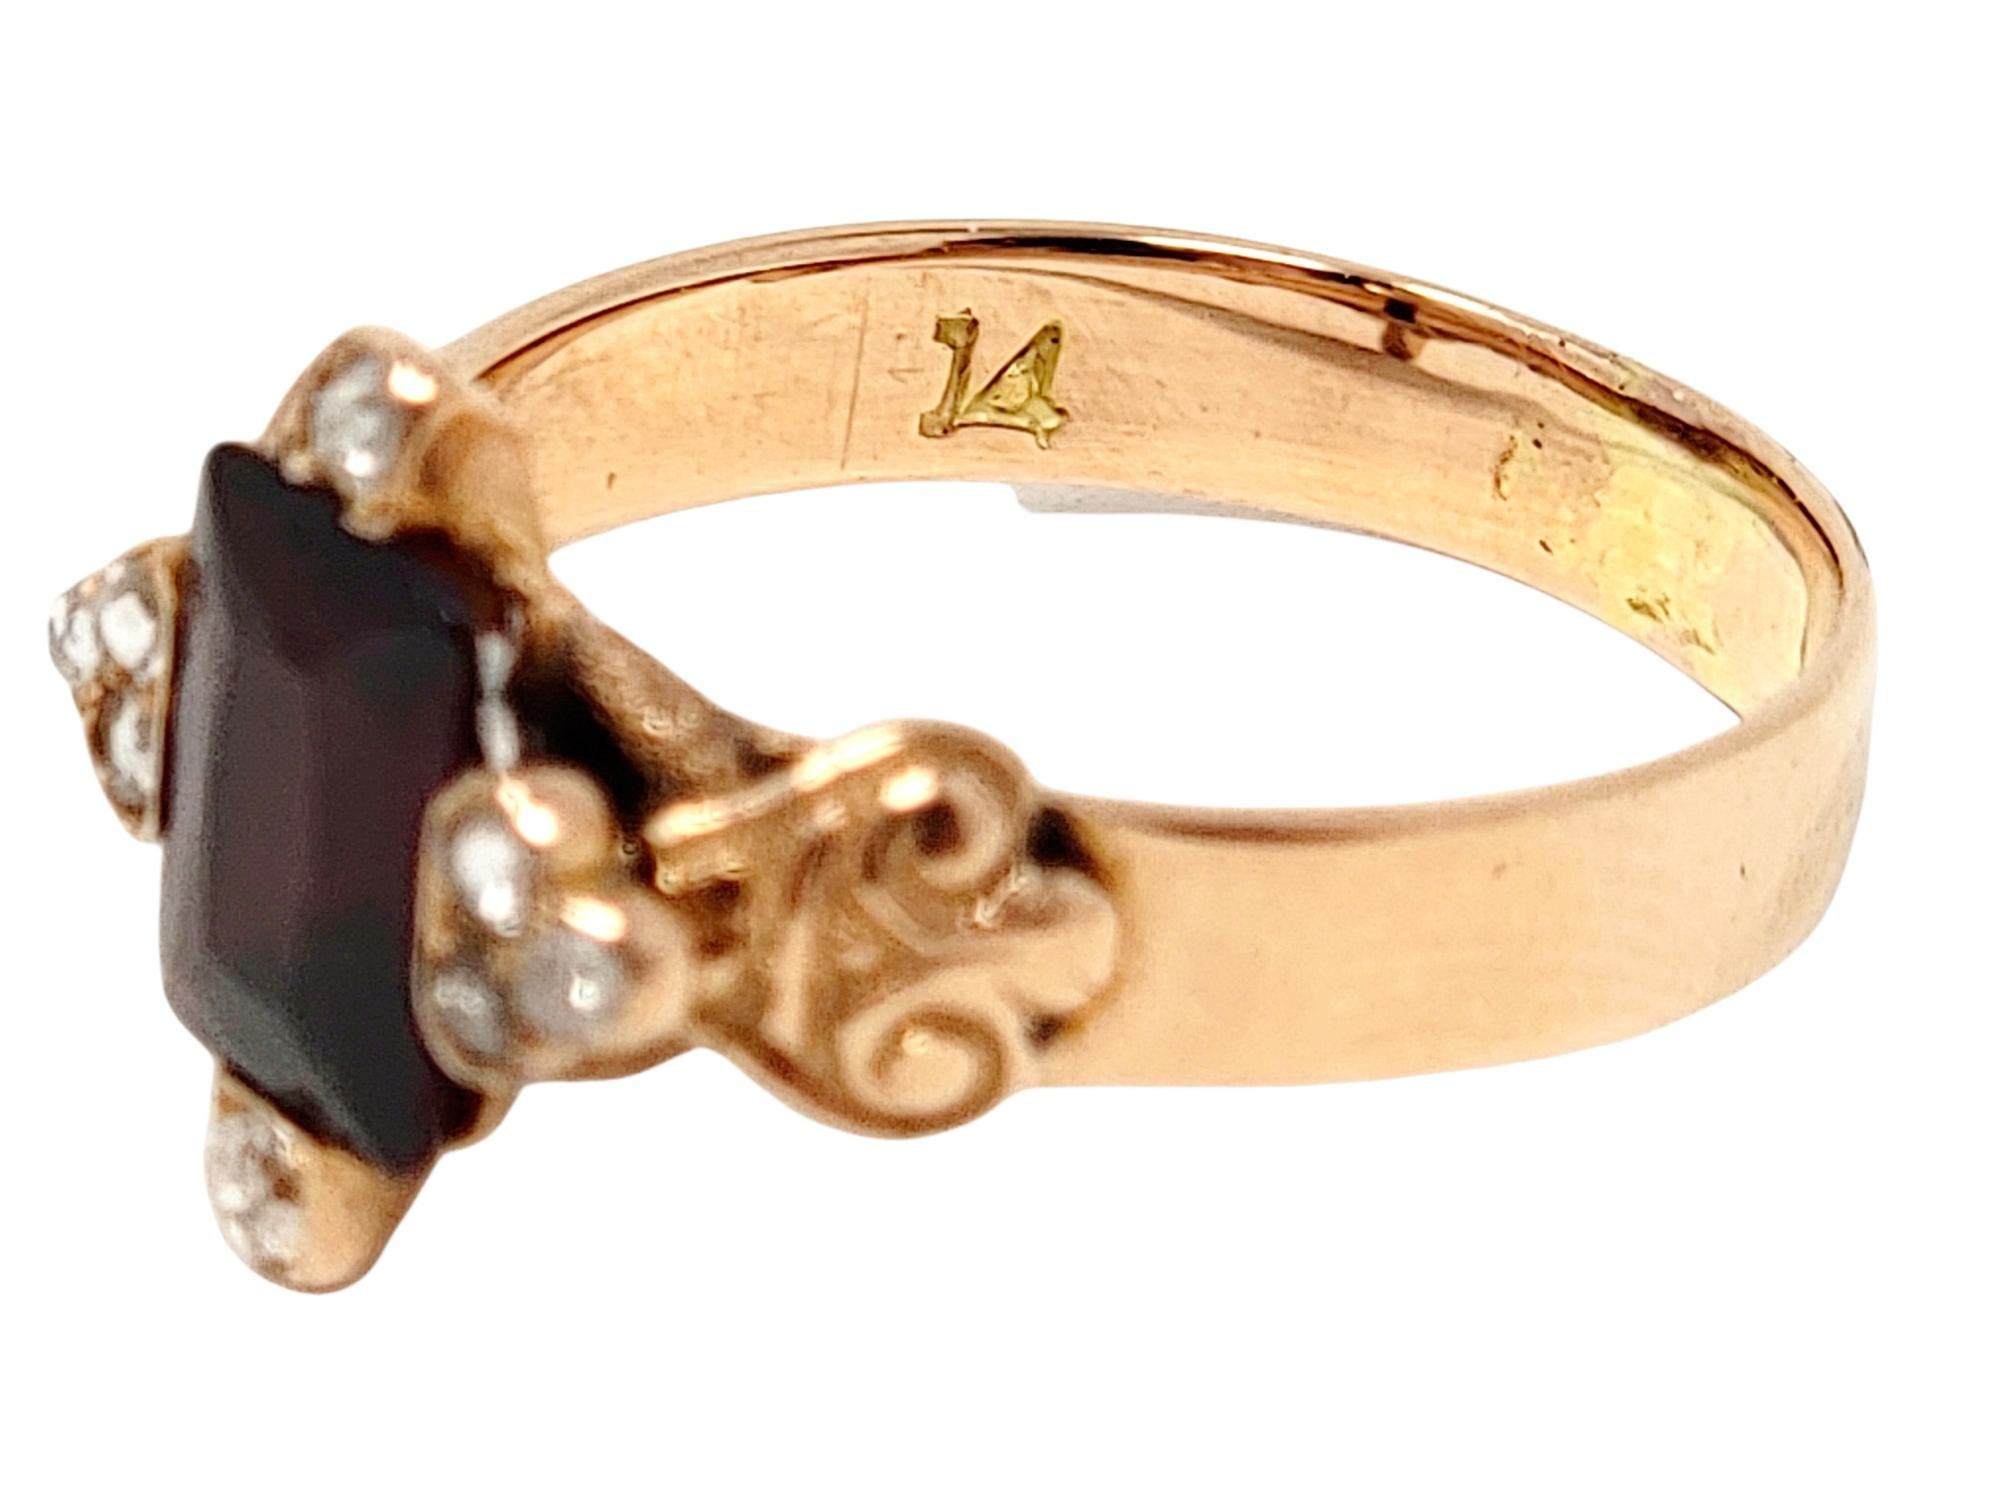 Antique Rectangular Cut Garnet and Rose Cut Diamond Band Ring 14 Karat Rose Gold 6